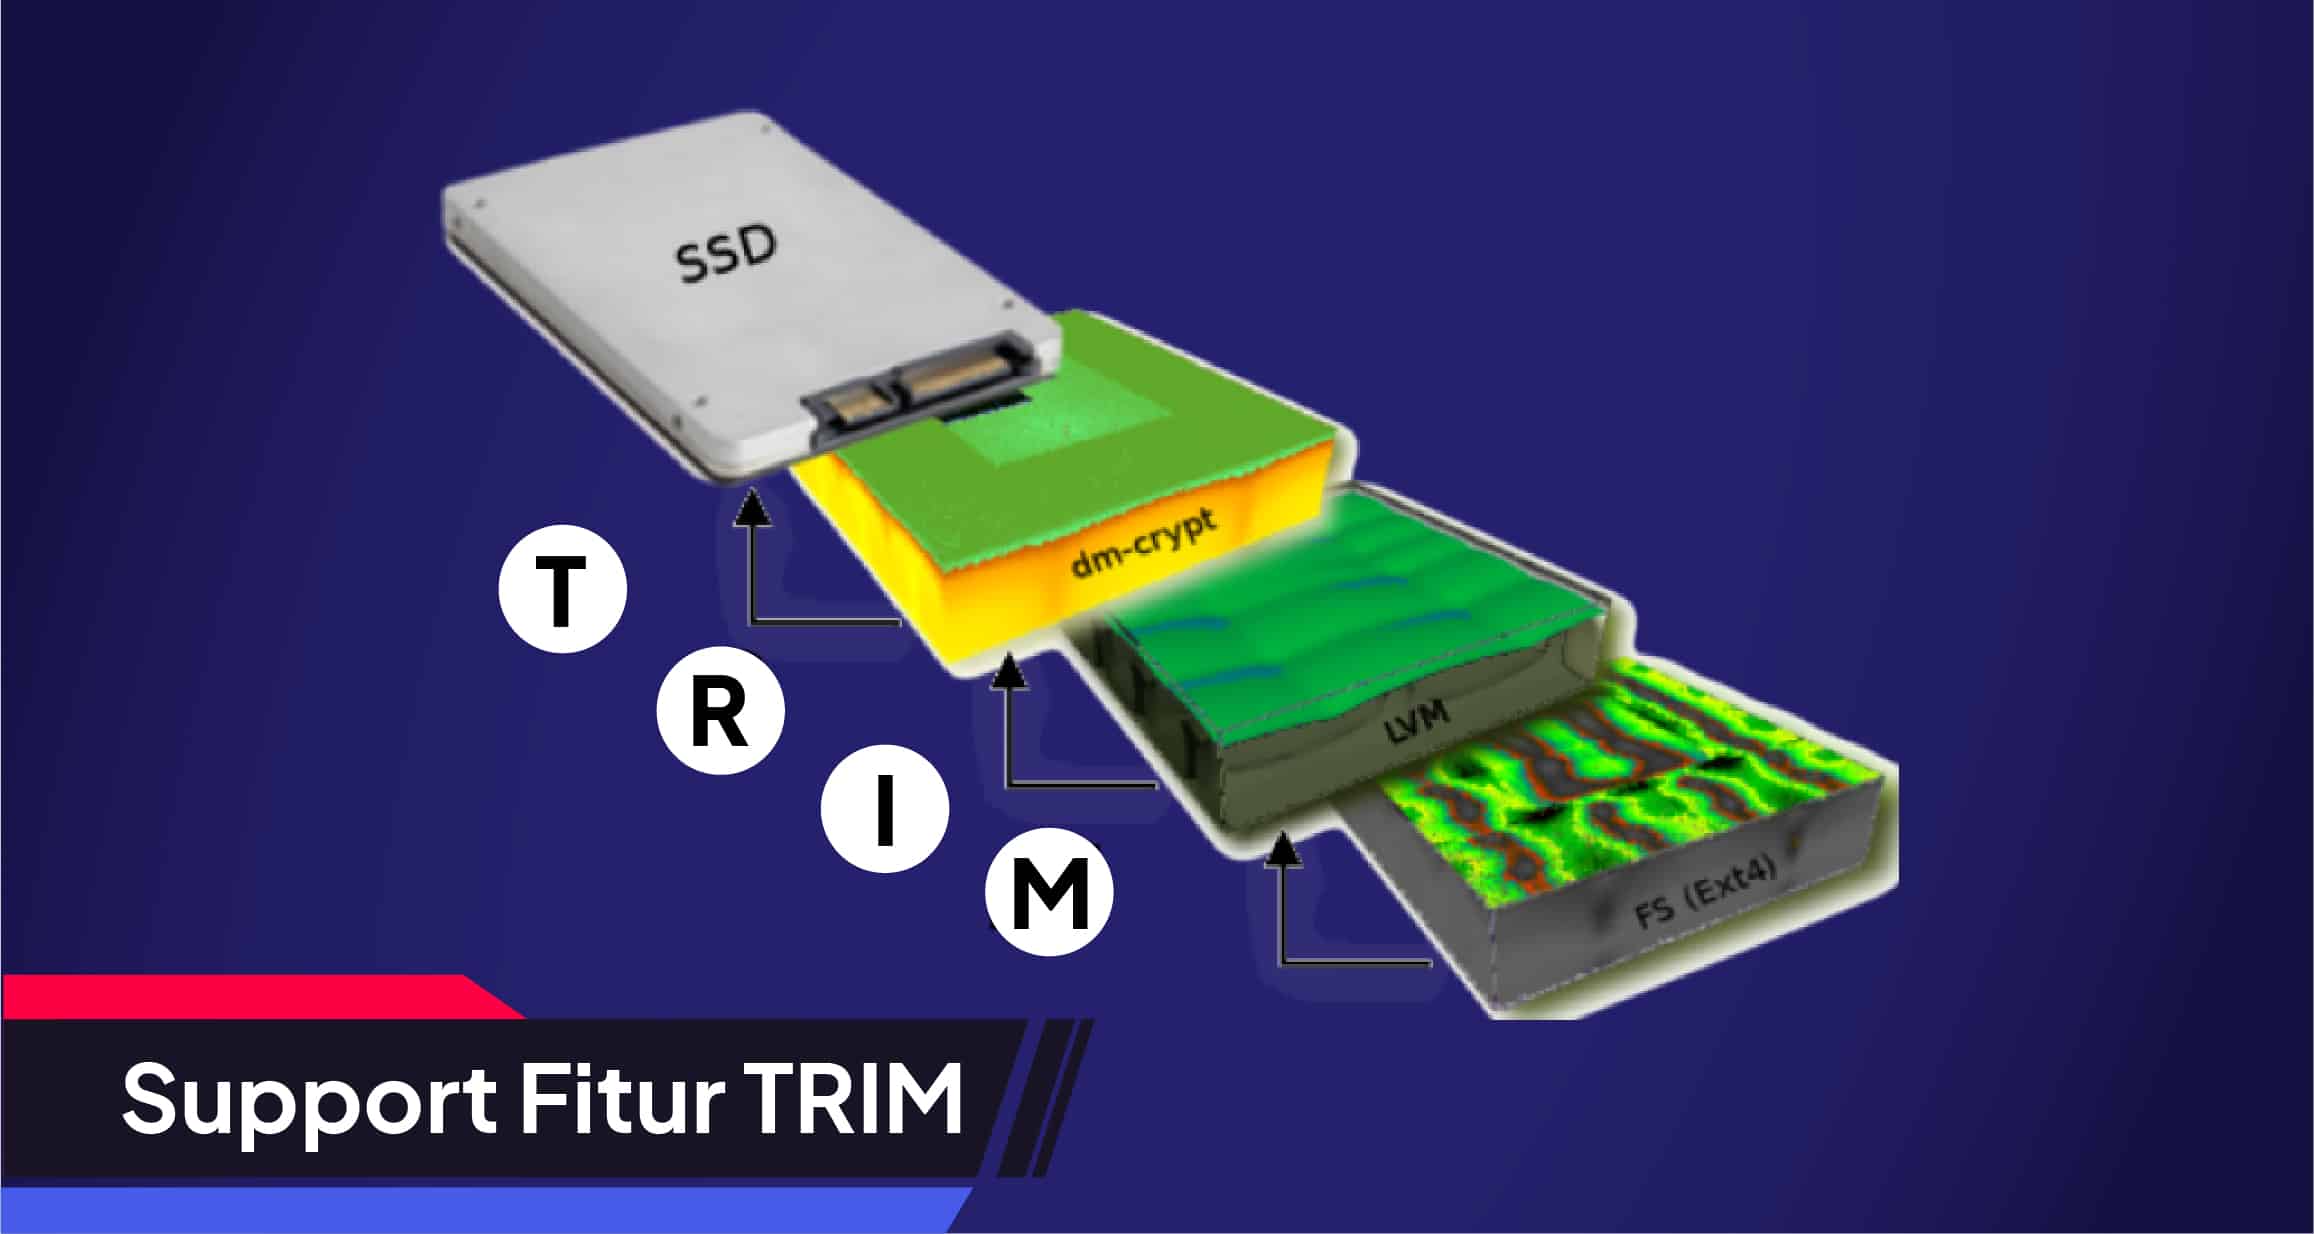 Toko Storage - Tips Memilih SSD Terbaik : Support Fitur TRIM